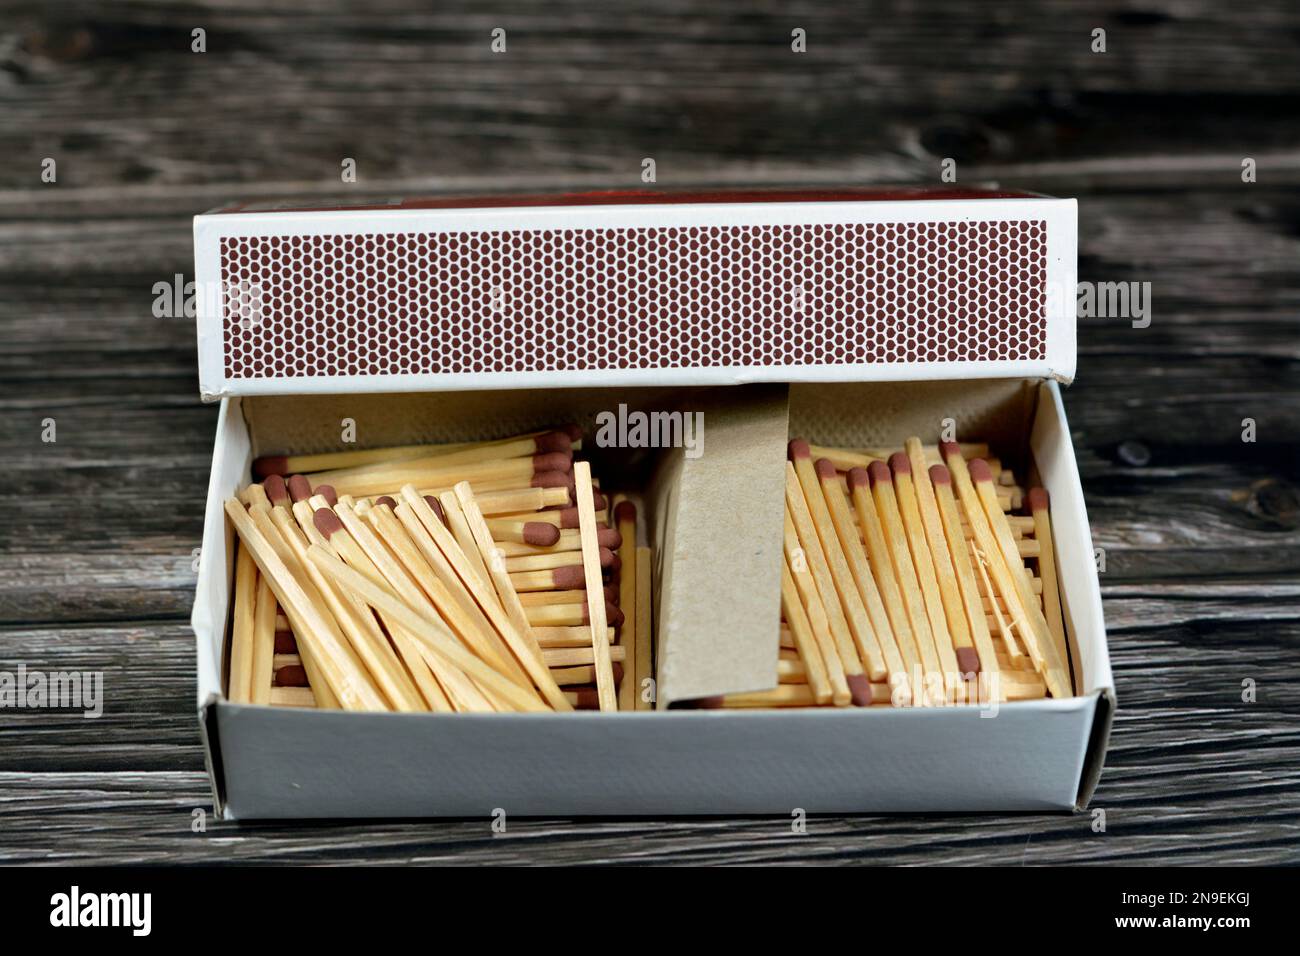 Matchstick, un match est un outil pour démarrer un feu, allumettes fait de petites bâtons de bois ou de papier rigide, une extrémité est revêtue d'un matériau enflammé par fr Banque D'Images